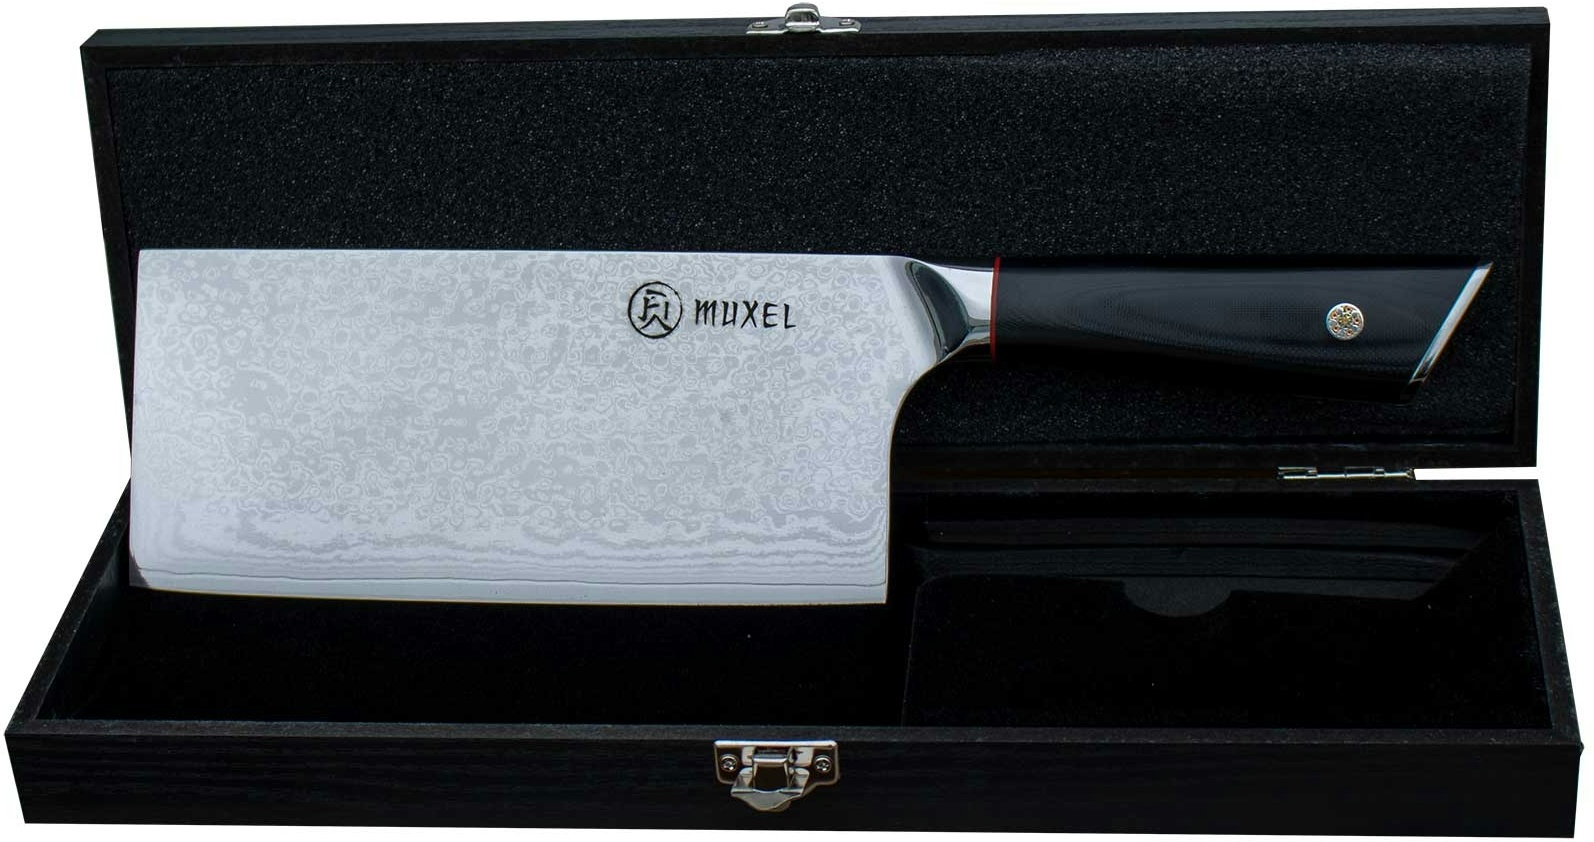 Muxel Damast Messer - Traumhaft schön – Das Metzgermesser ist ideal als Kochmesser